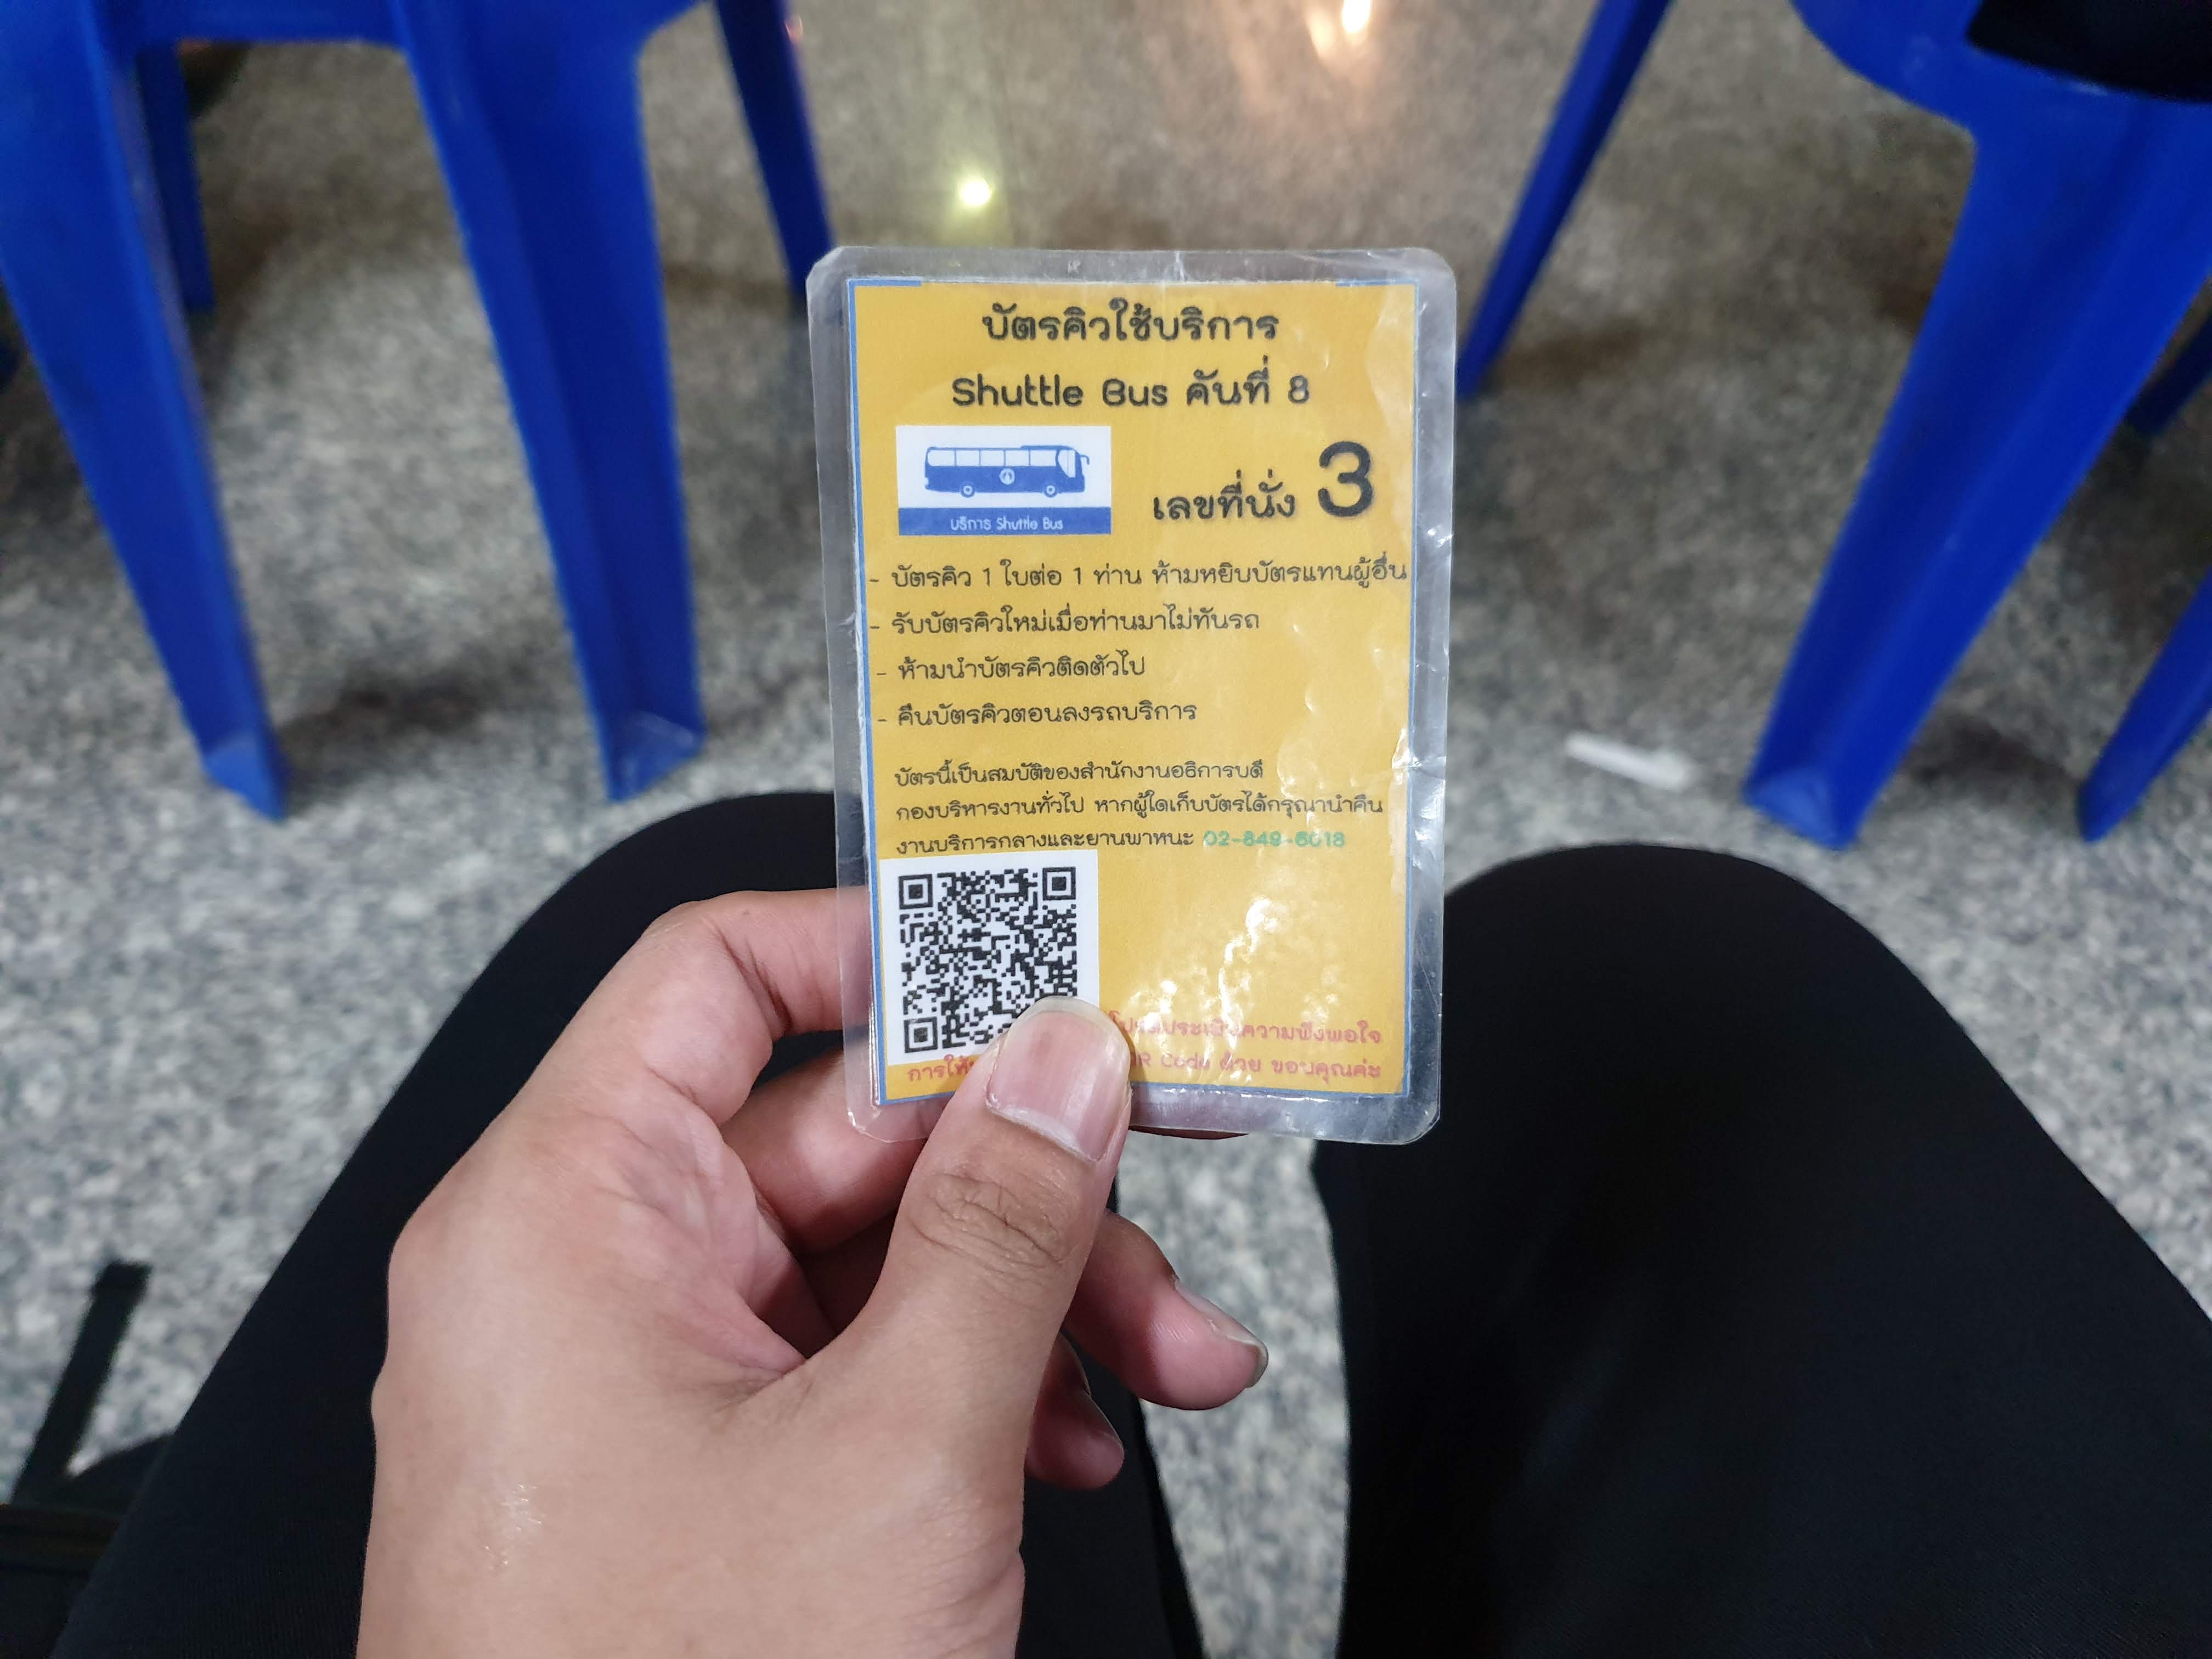 Queue Card for Mahidol Shuttle Bus